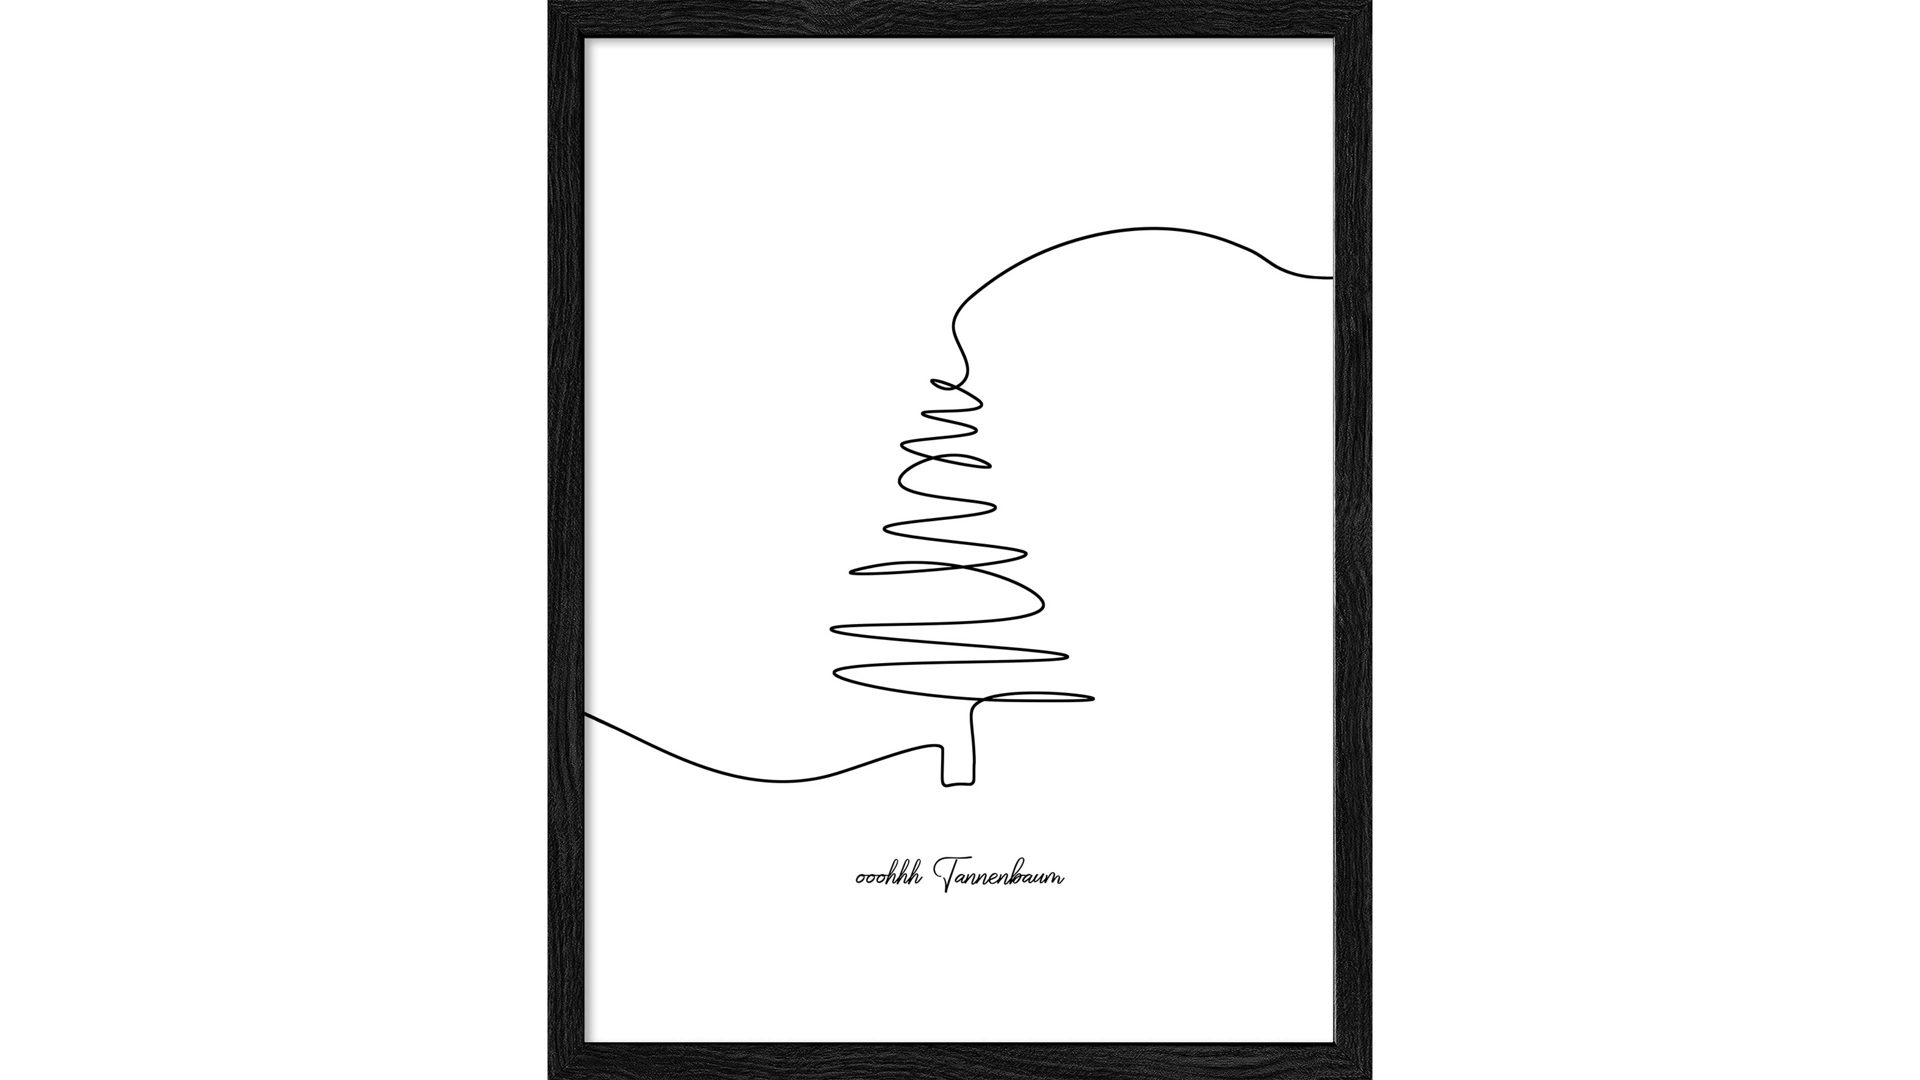 Kunstdruck Pro®art bilderpalette aus Karton / Papier / Pappe in Weiß PRO®ART Kunstdruck Christmas 2 Weiß & Schwarz - ca. 33 x 43 cm